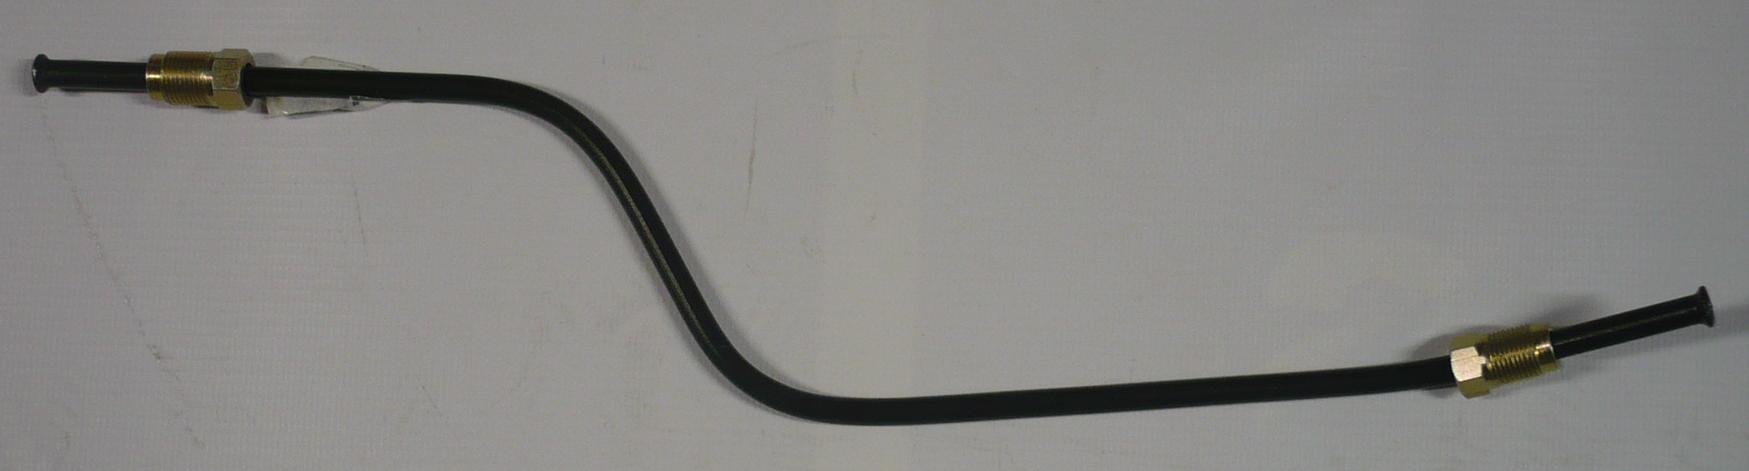 Trubka brzdová pravá přední ke kostce Multicar M25